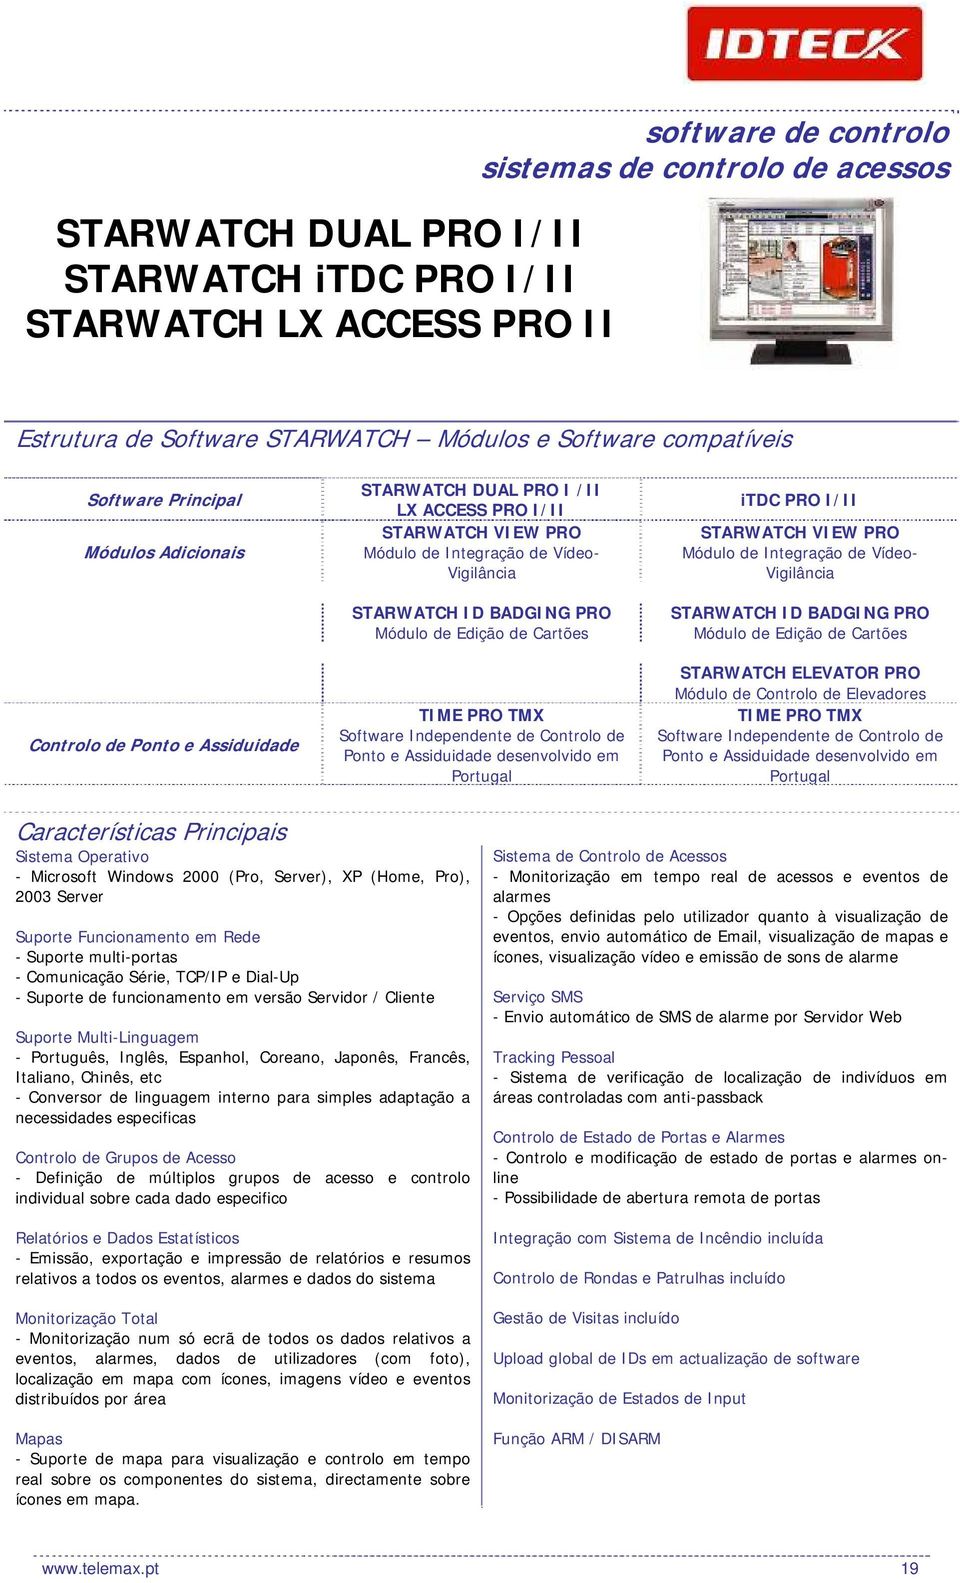 de Edição de Cartões TIME PRO TMX Software Independente de Controlo de Ponto e Assiduidade desenvolvido em Portugal itdc PRO I/II STARWATCH VIEW PRO Módulo de Integração de Vídeo- Vigilância